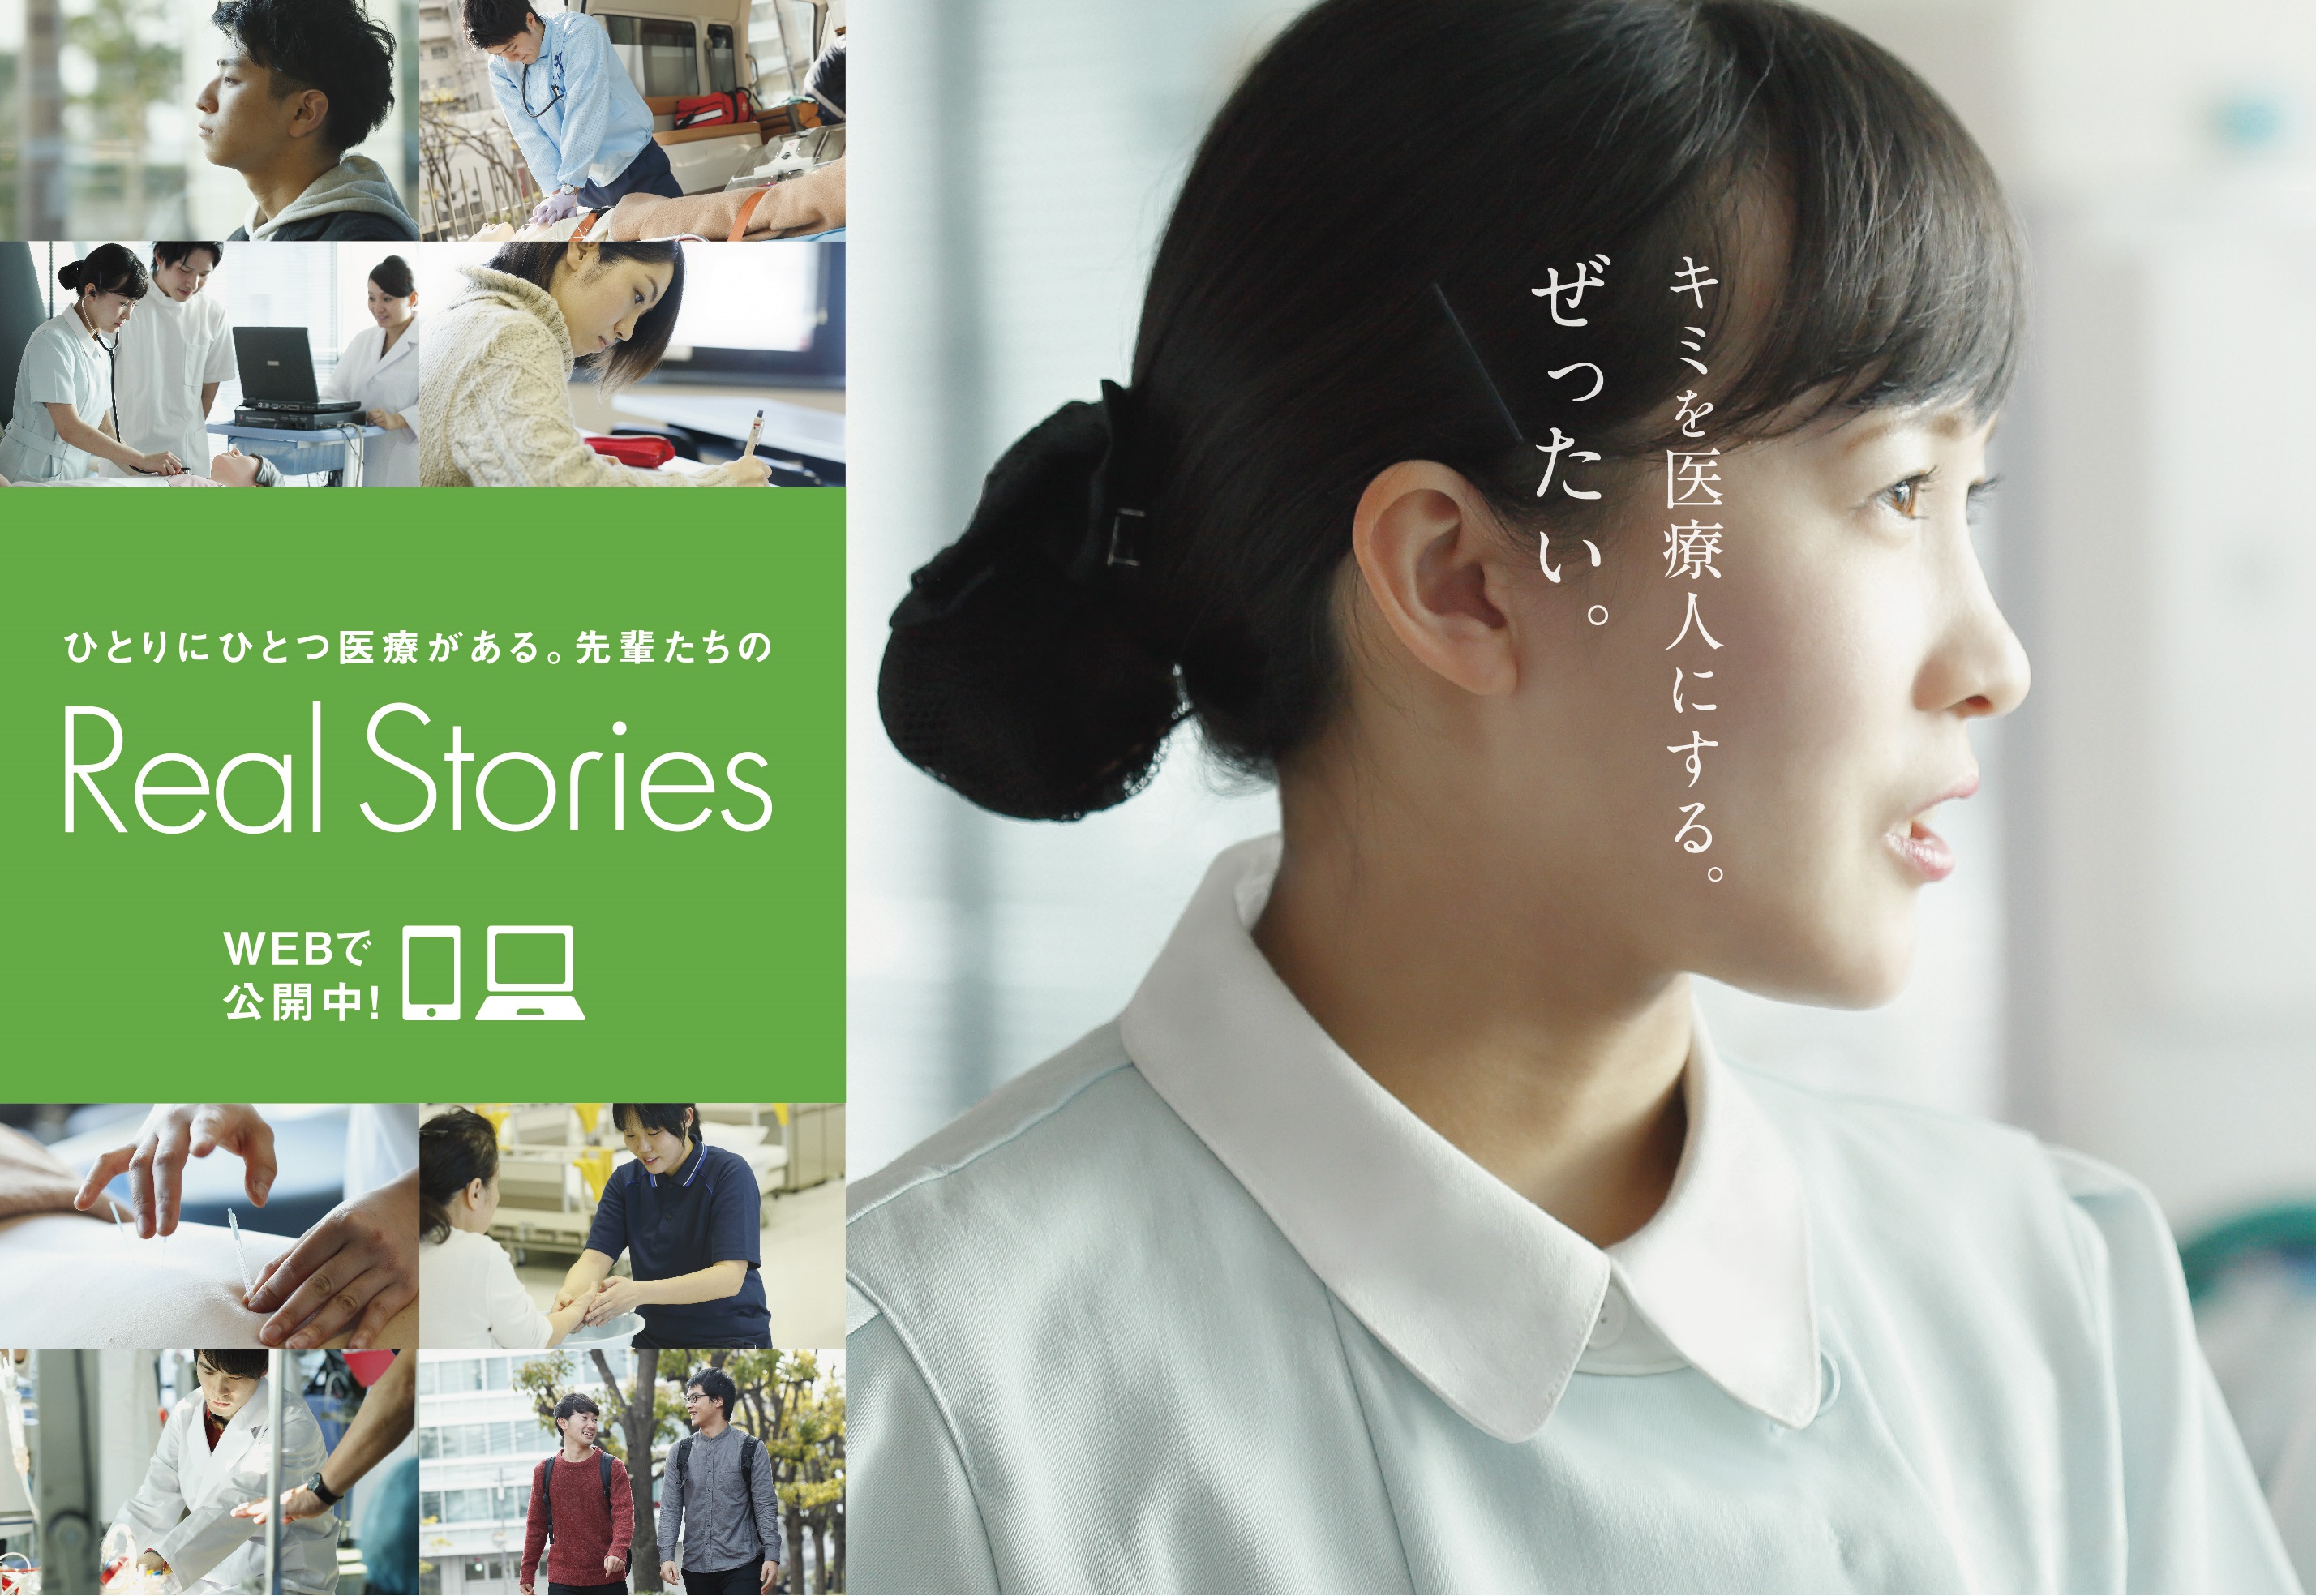 ひとりにひとつ 医療がある 先輩たちのreal Stories 学校法人 日本教育財団のプレスリリース